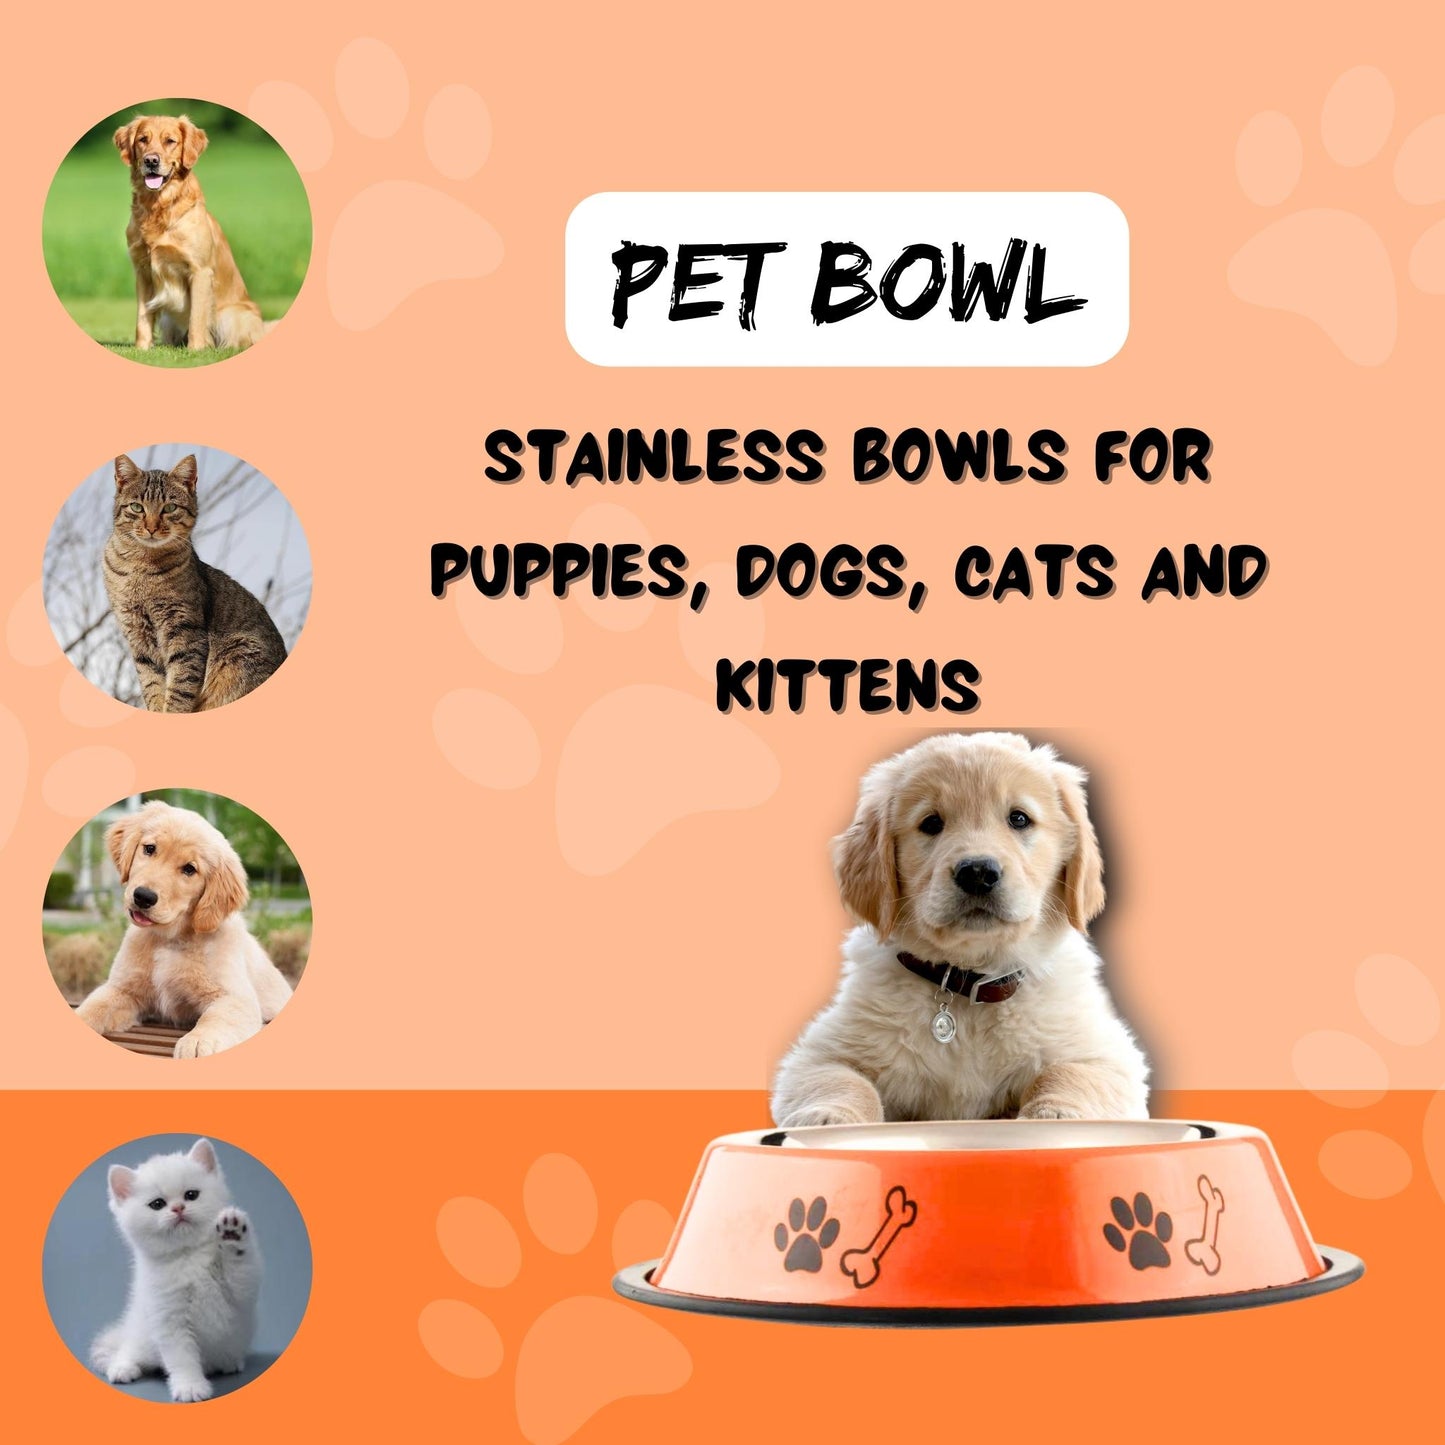 Foodie Puppies Printed Steel Bowl for Pets - 700ml (Orange), Pack of 2